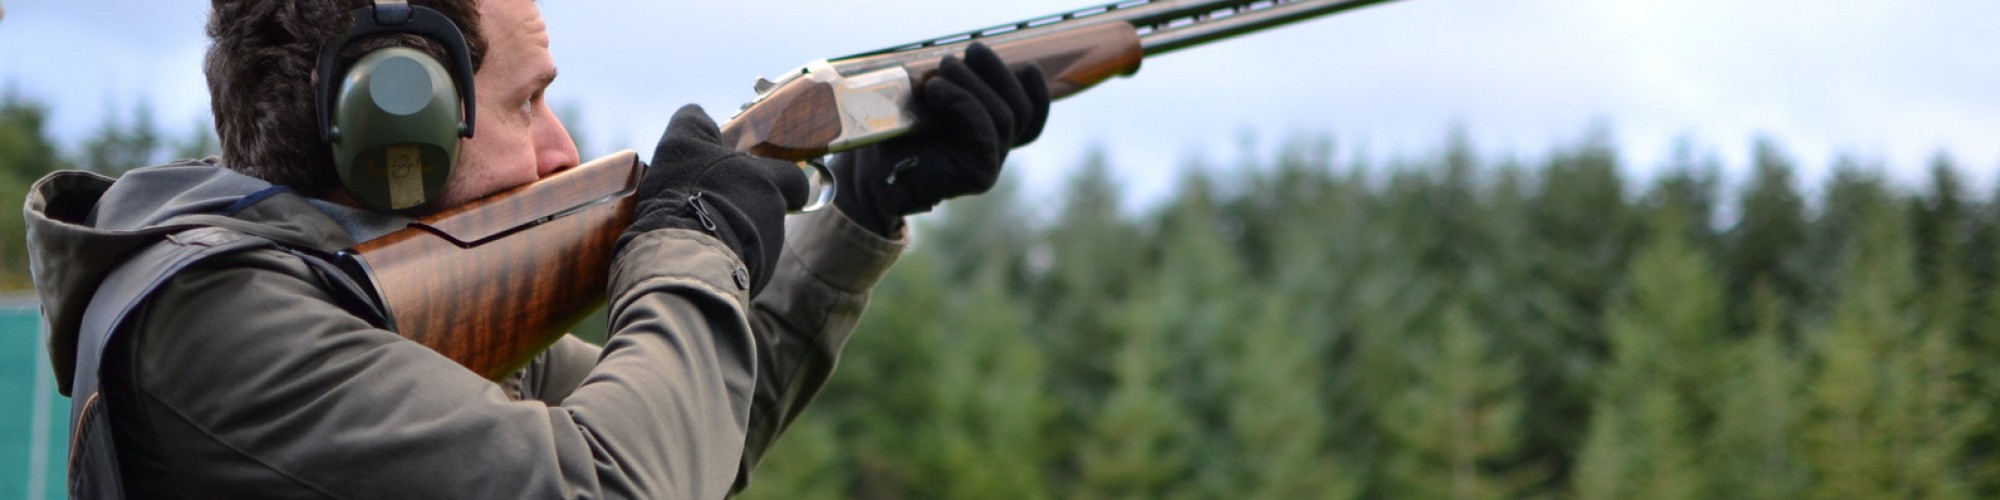 Canva man shooting shotguns at clay pigeon outdoors